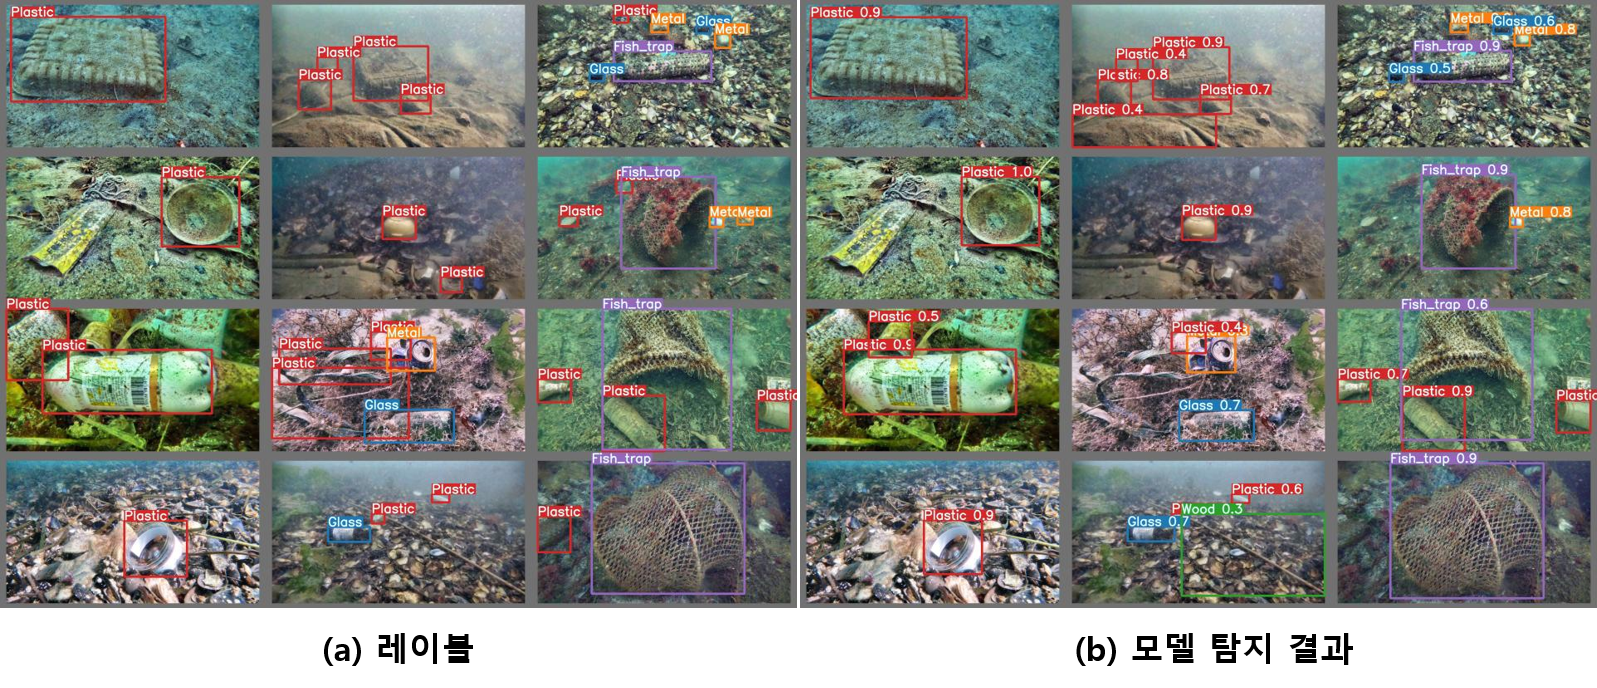 모델 예측 결과 왼쪽 레이블 12종 이미지와 왼쪽 모델 탐지 결과 12종 이미지 